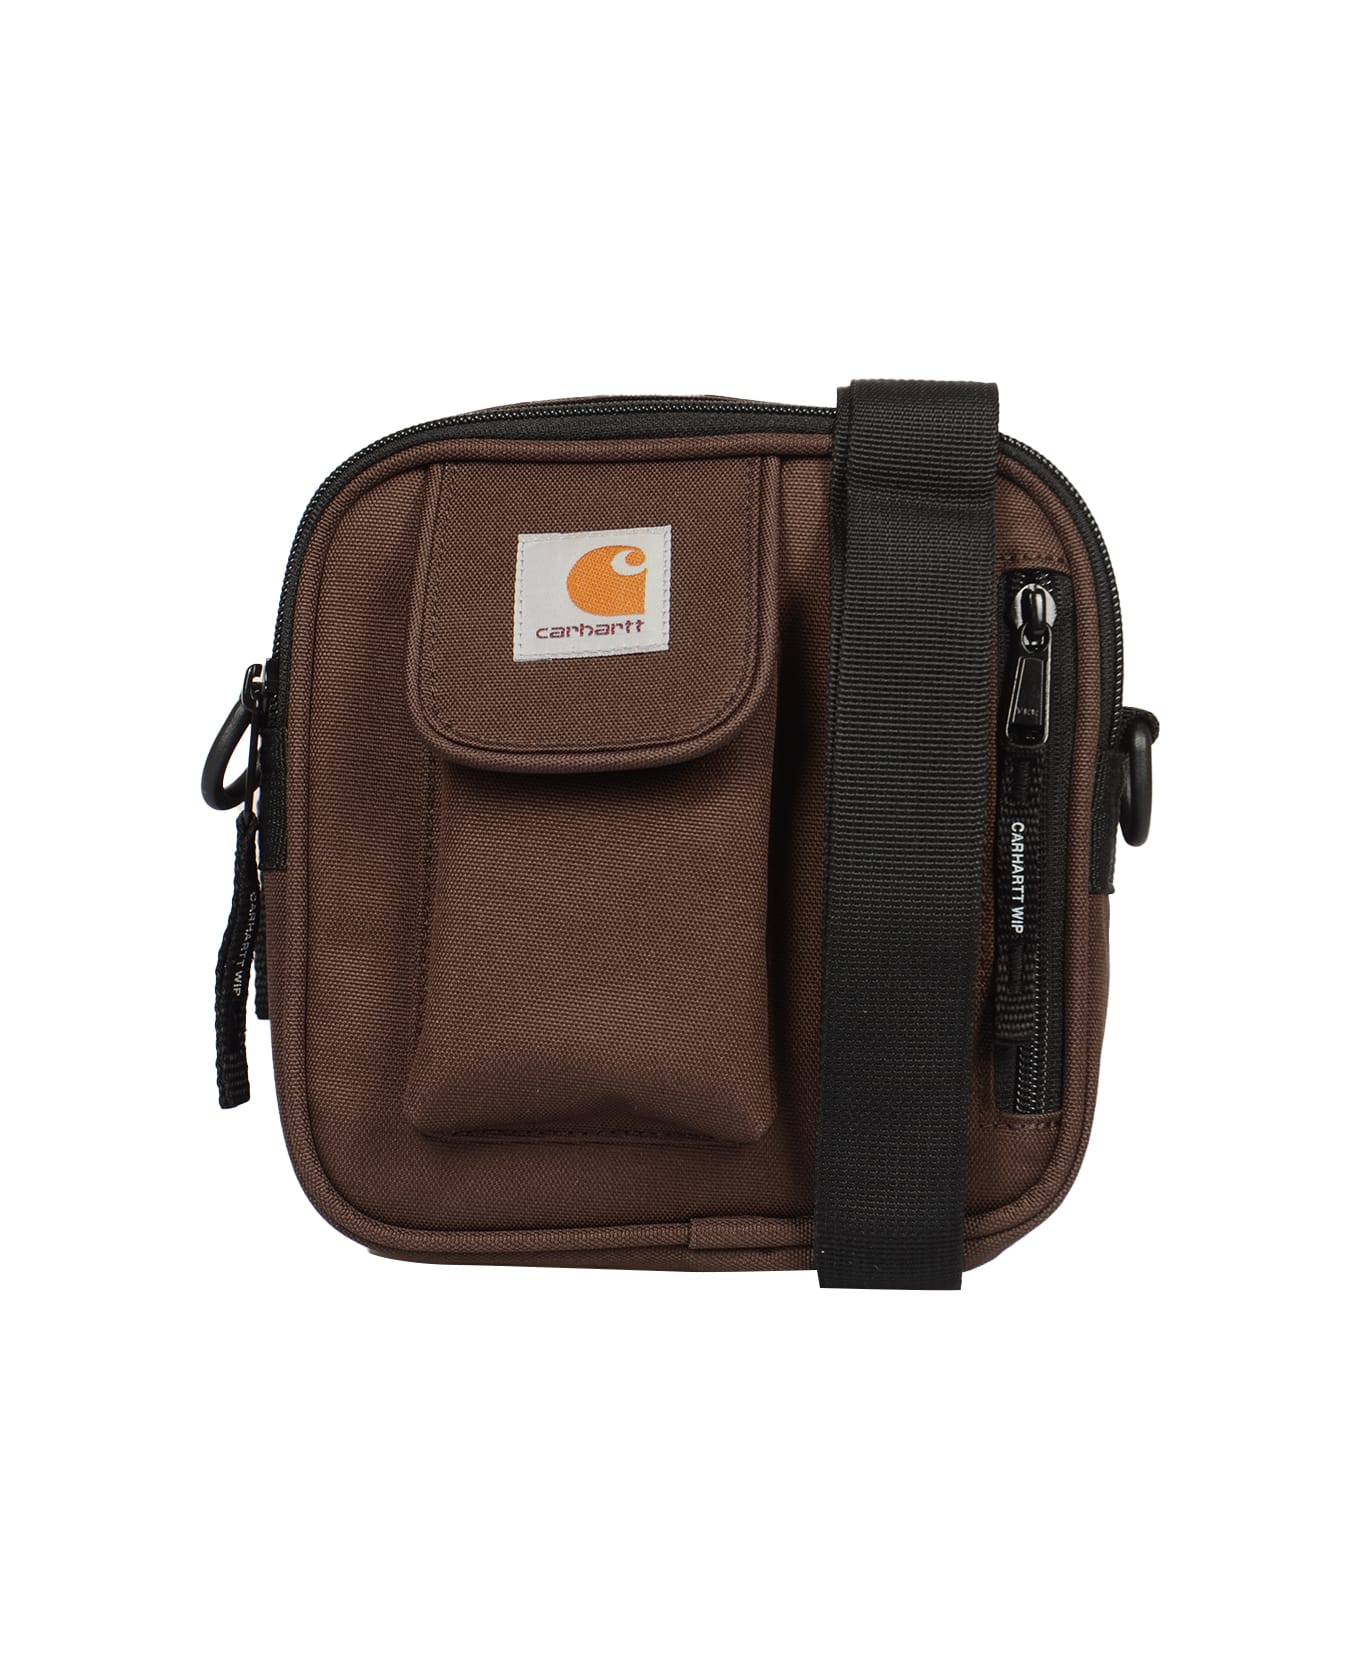 Carhartt Essentials Small Shoulder Bag - TOBACCO